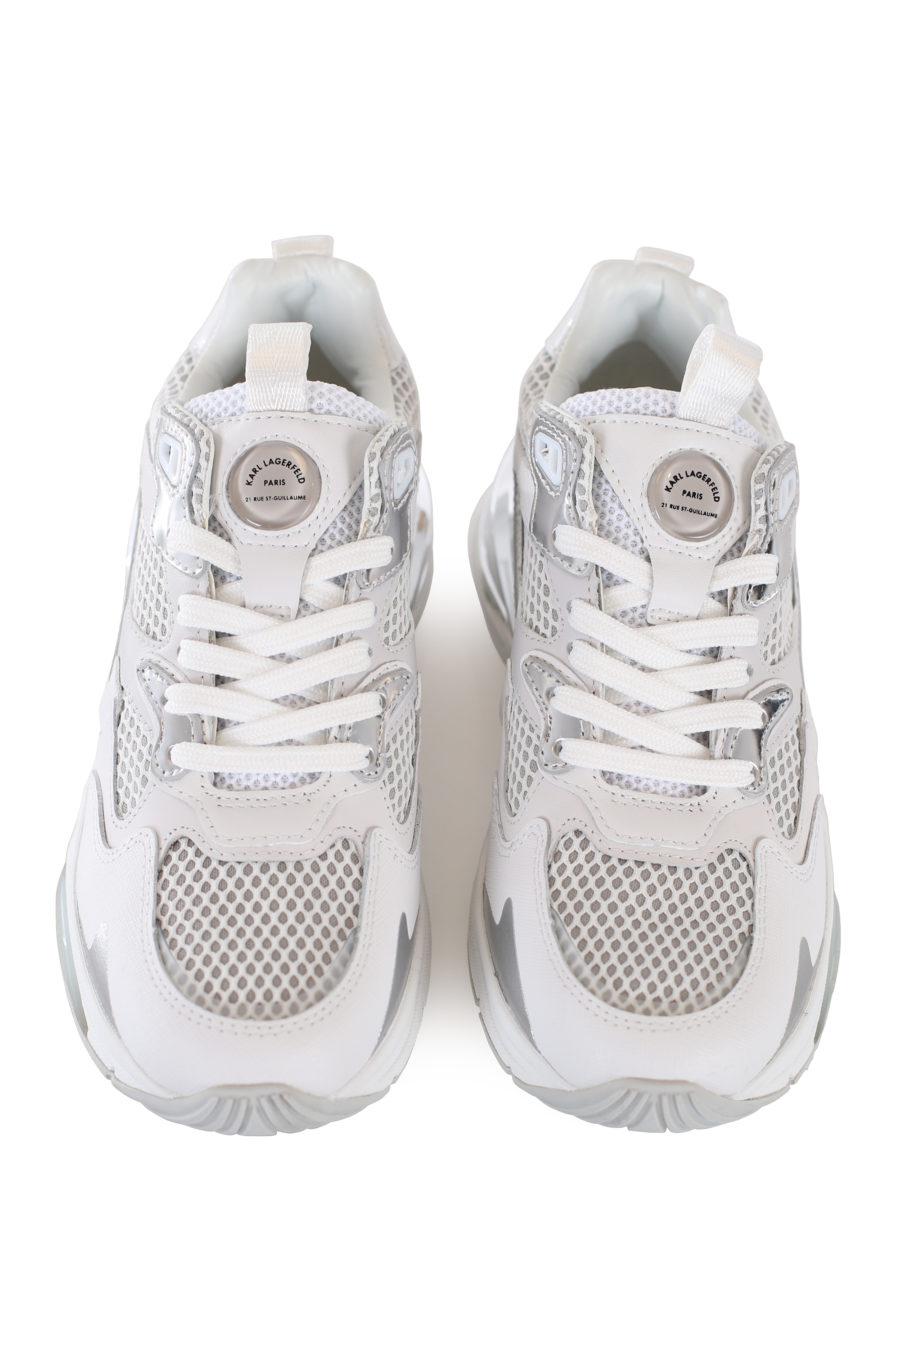 Zapatillas deportivas blancas y plateadas "Spree" - IMG 1668